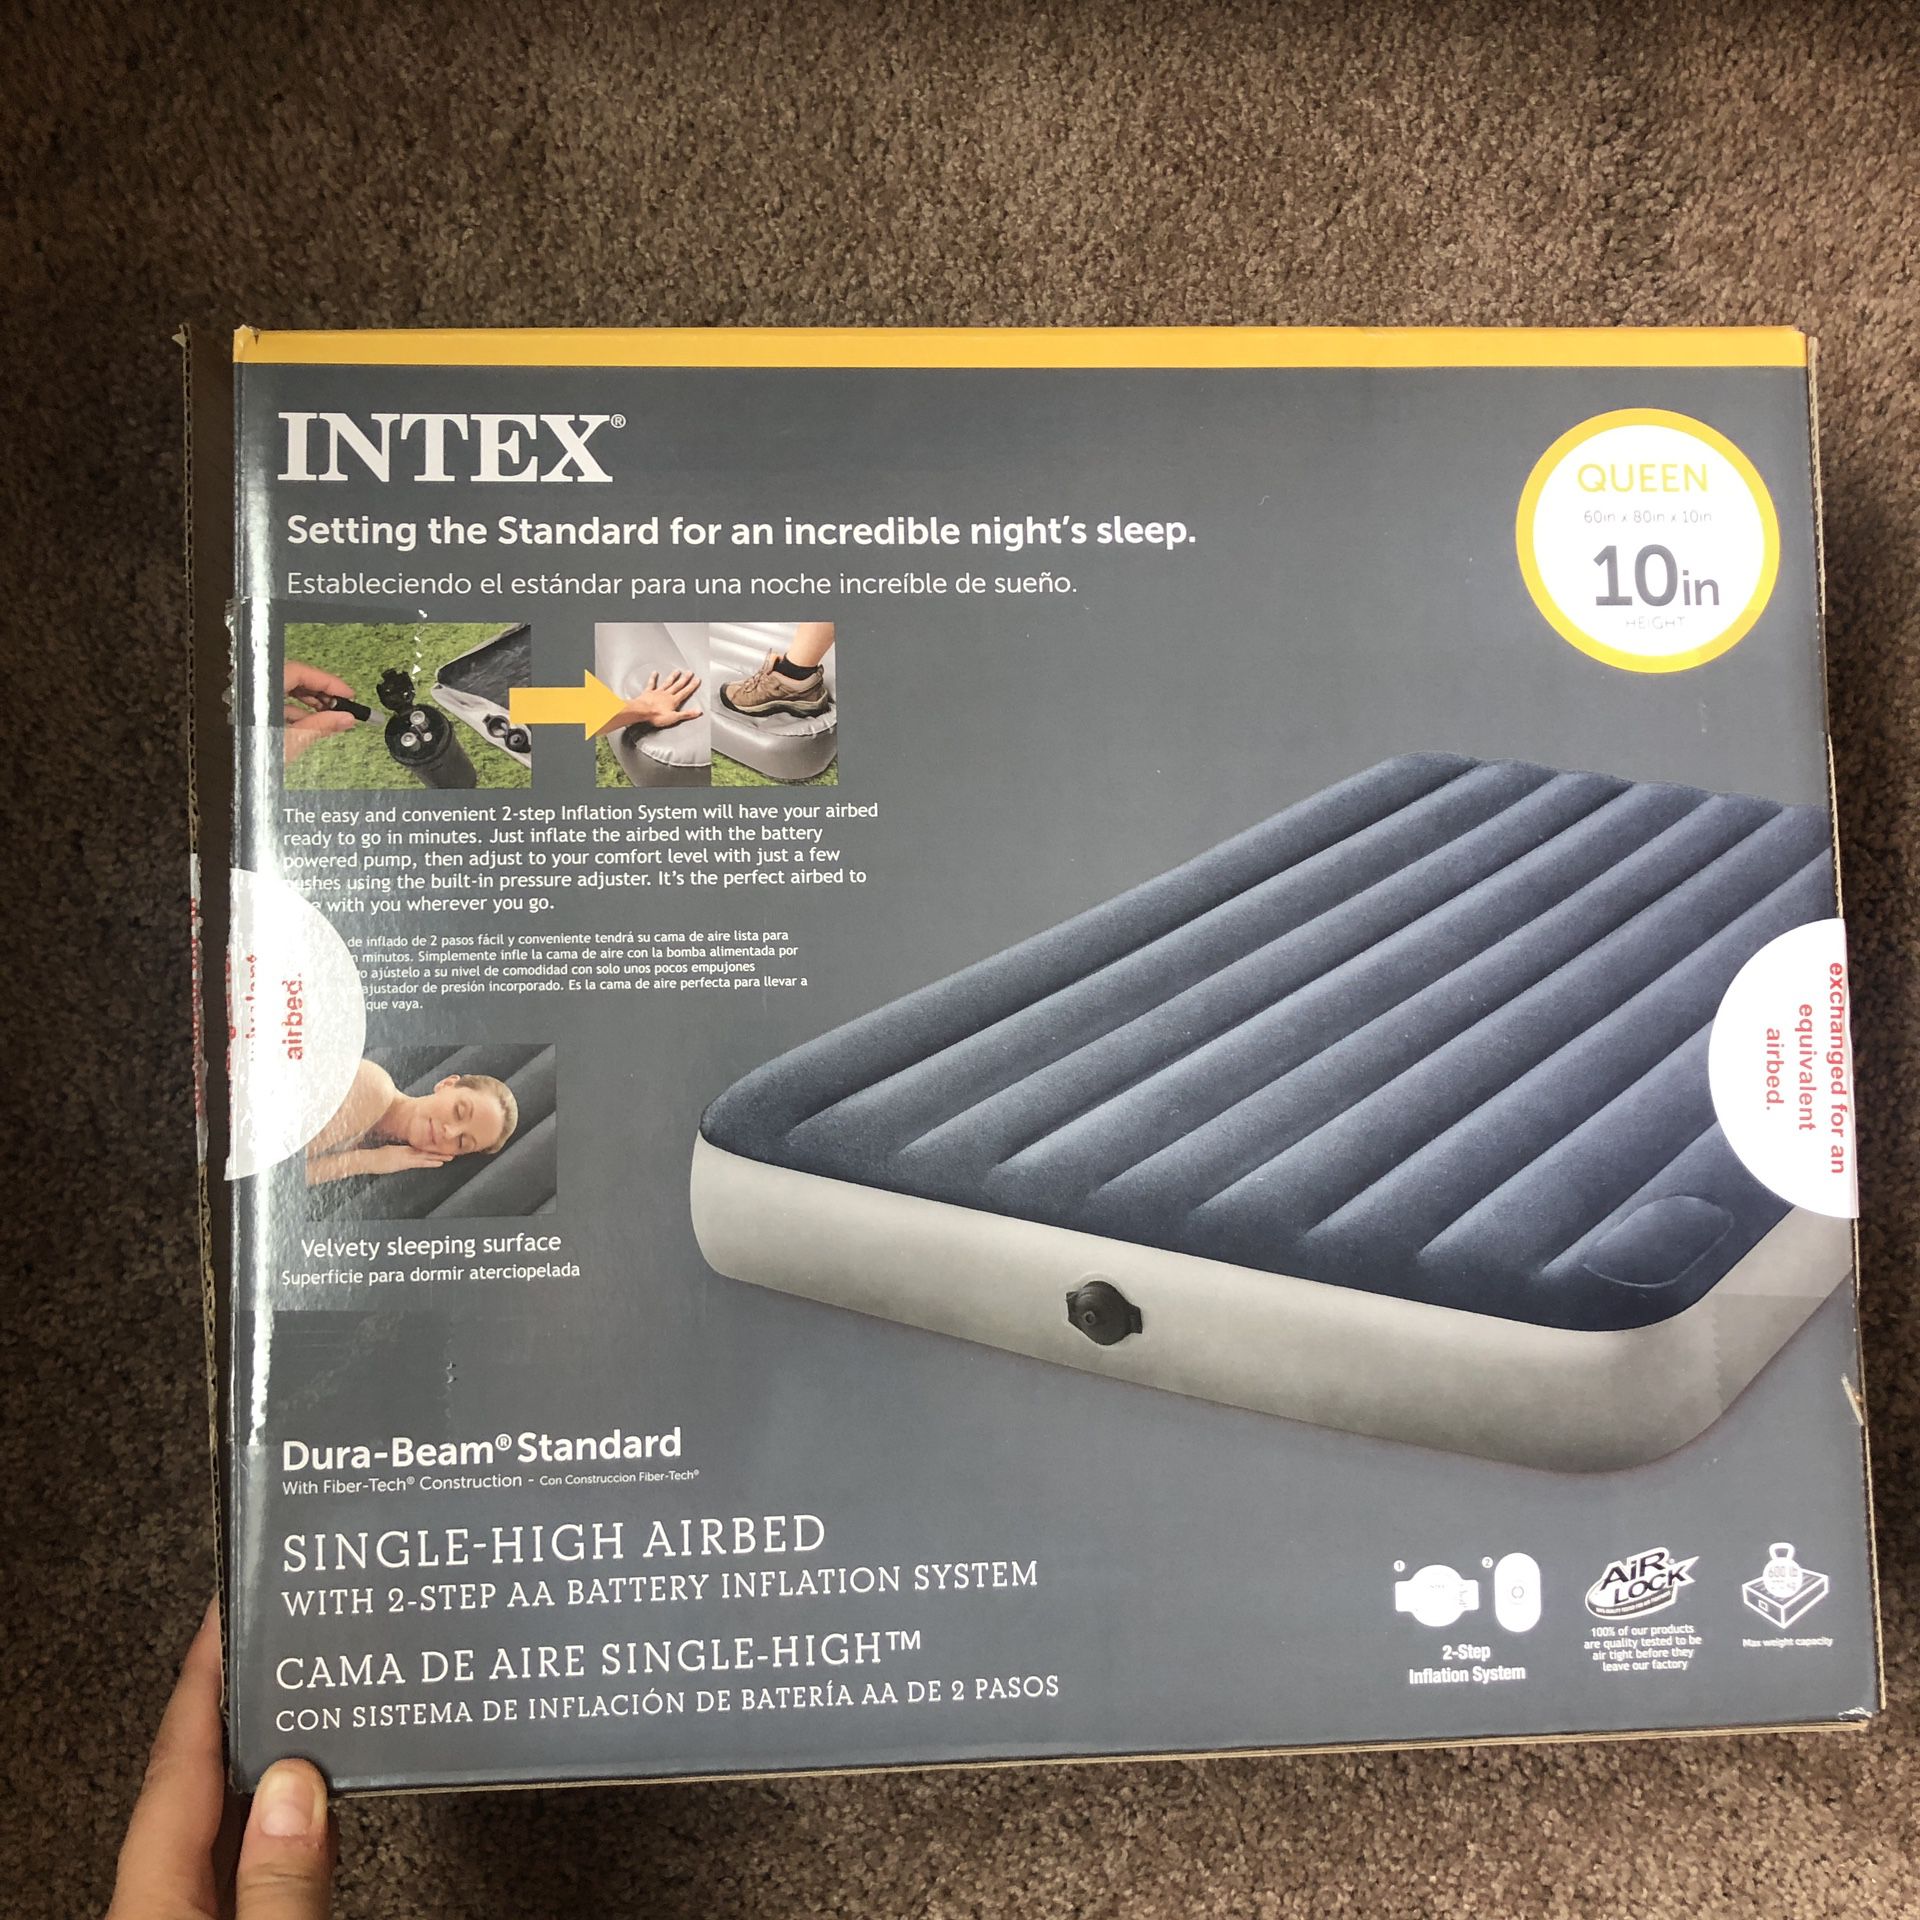 New Intex Queen Size Air mattress with built in pump